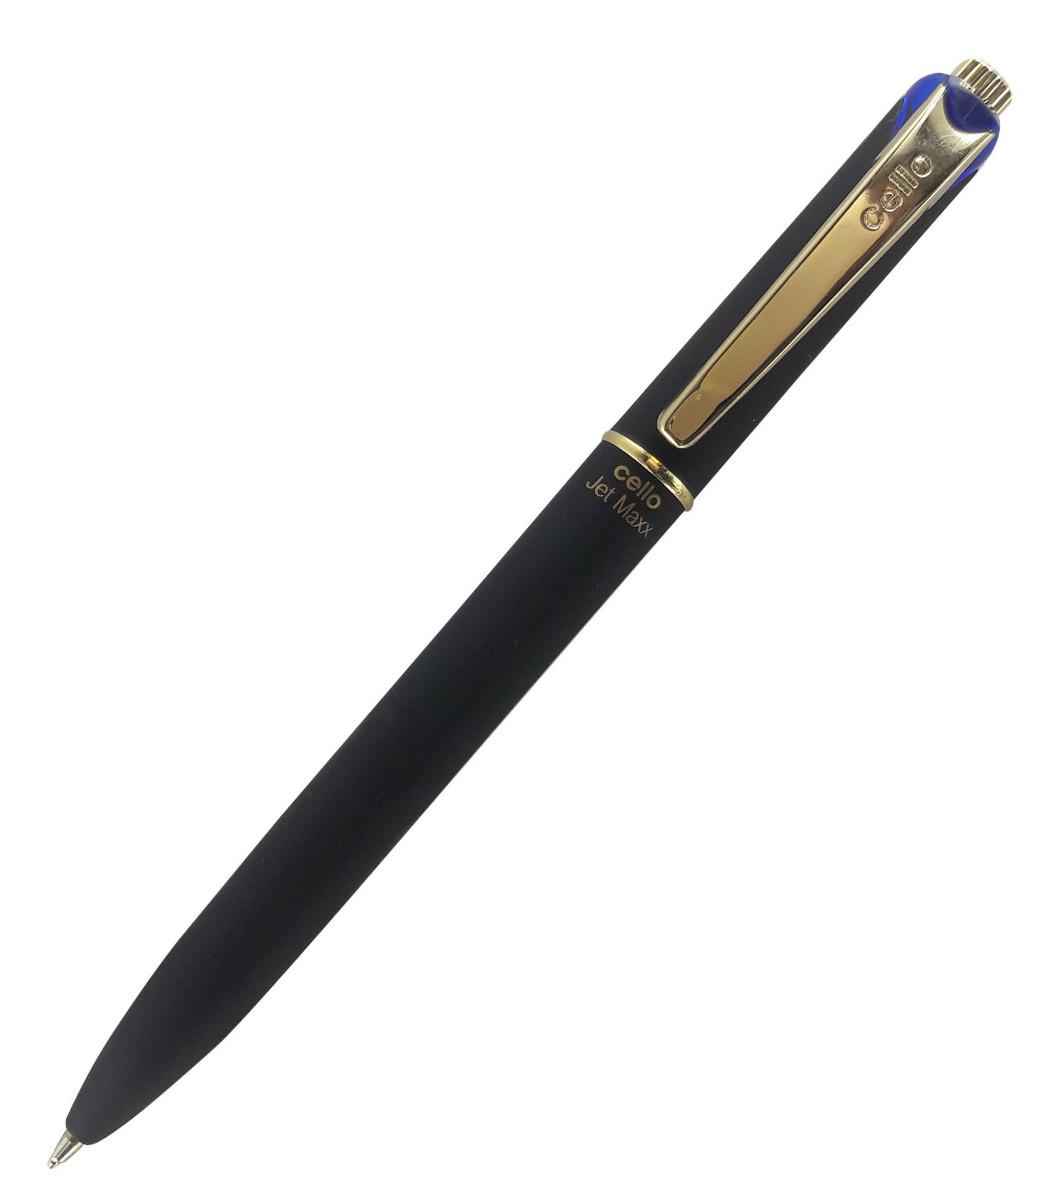 Cello Model No: 11888 Jet Maxx Gold Black Color Rubberised Body Click Type Ball pen